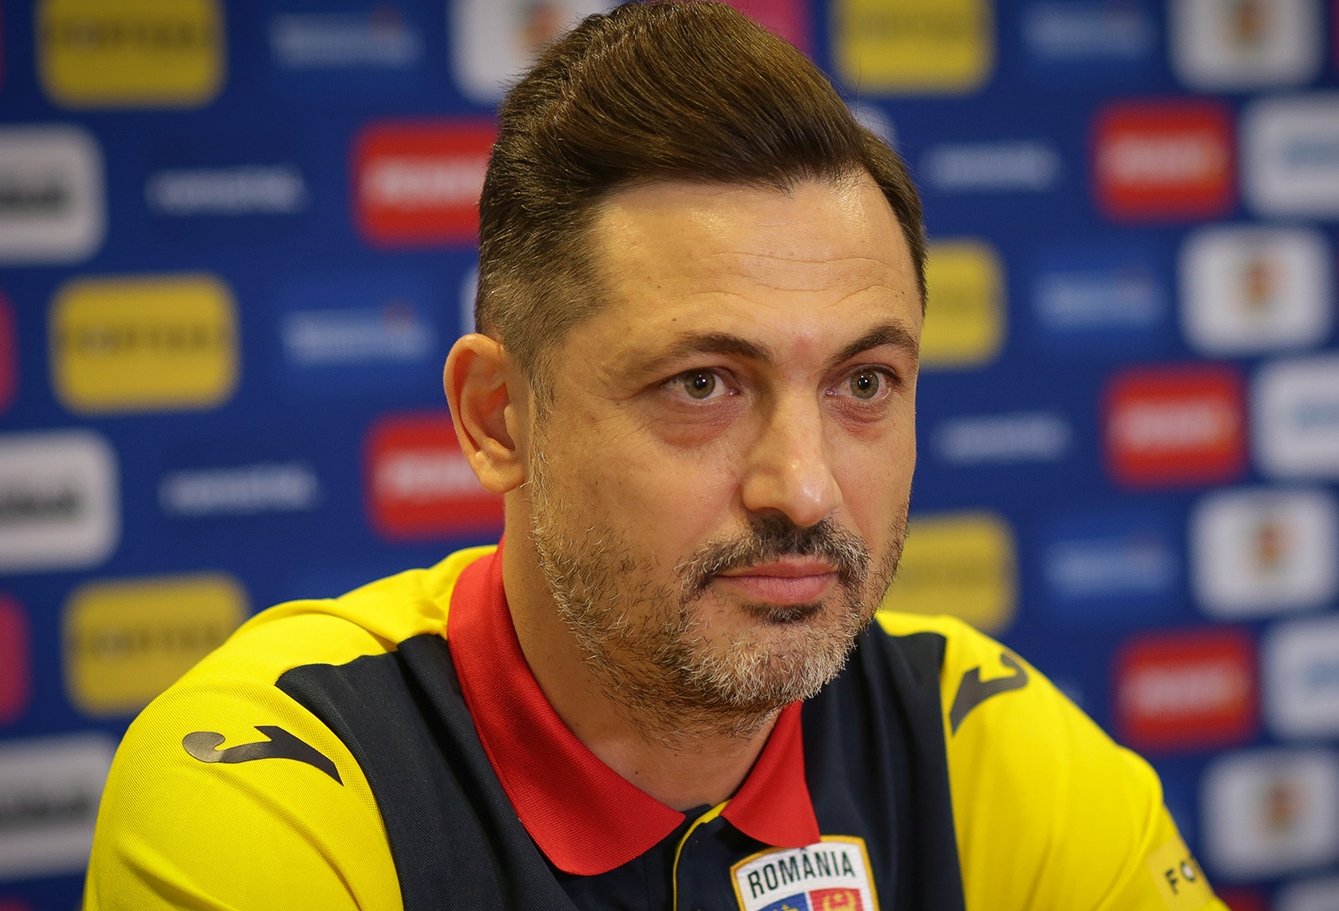 Oficial. Mirel Rădoi este noul antrenor al echipei CS Universitatea Craiova: “Sunt puțin emoționat. Mă bucur sa fiu aici” (Video)